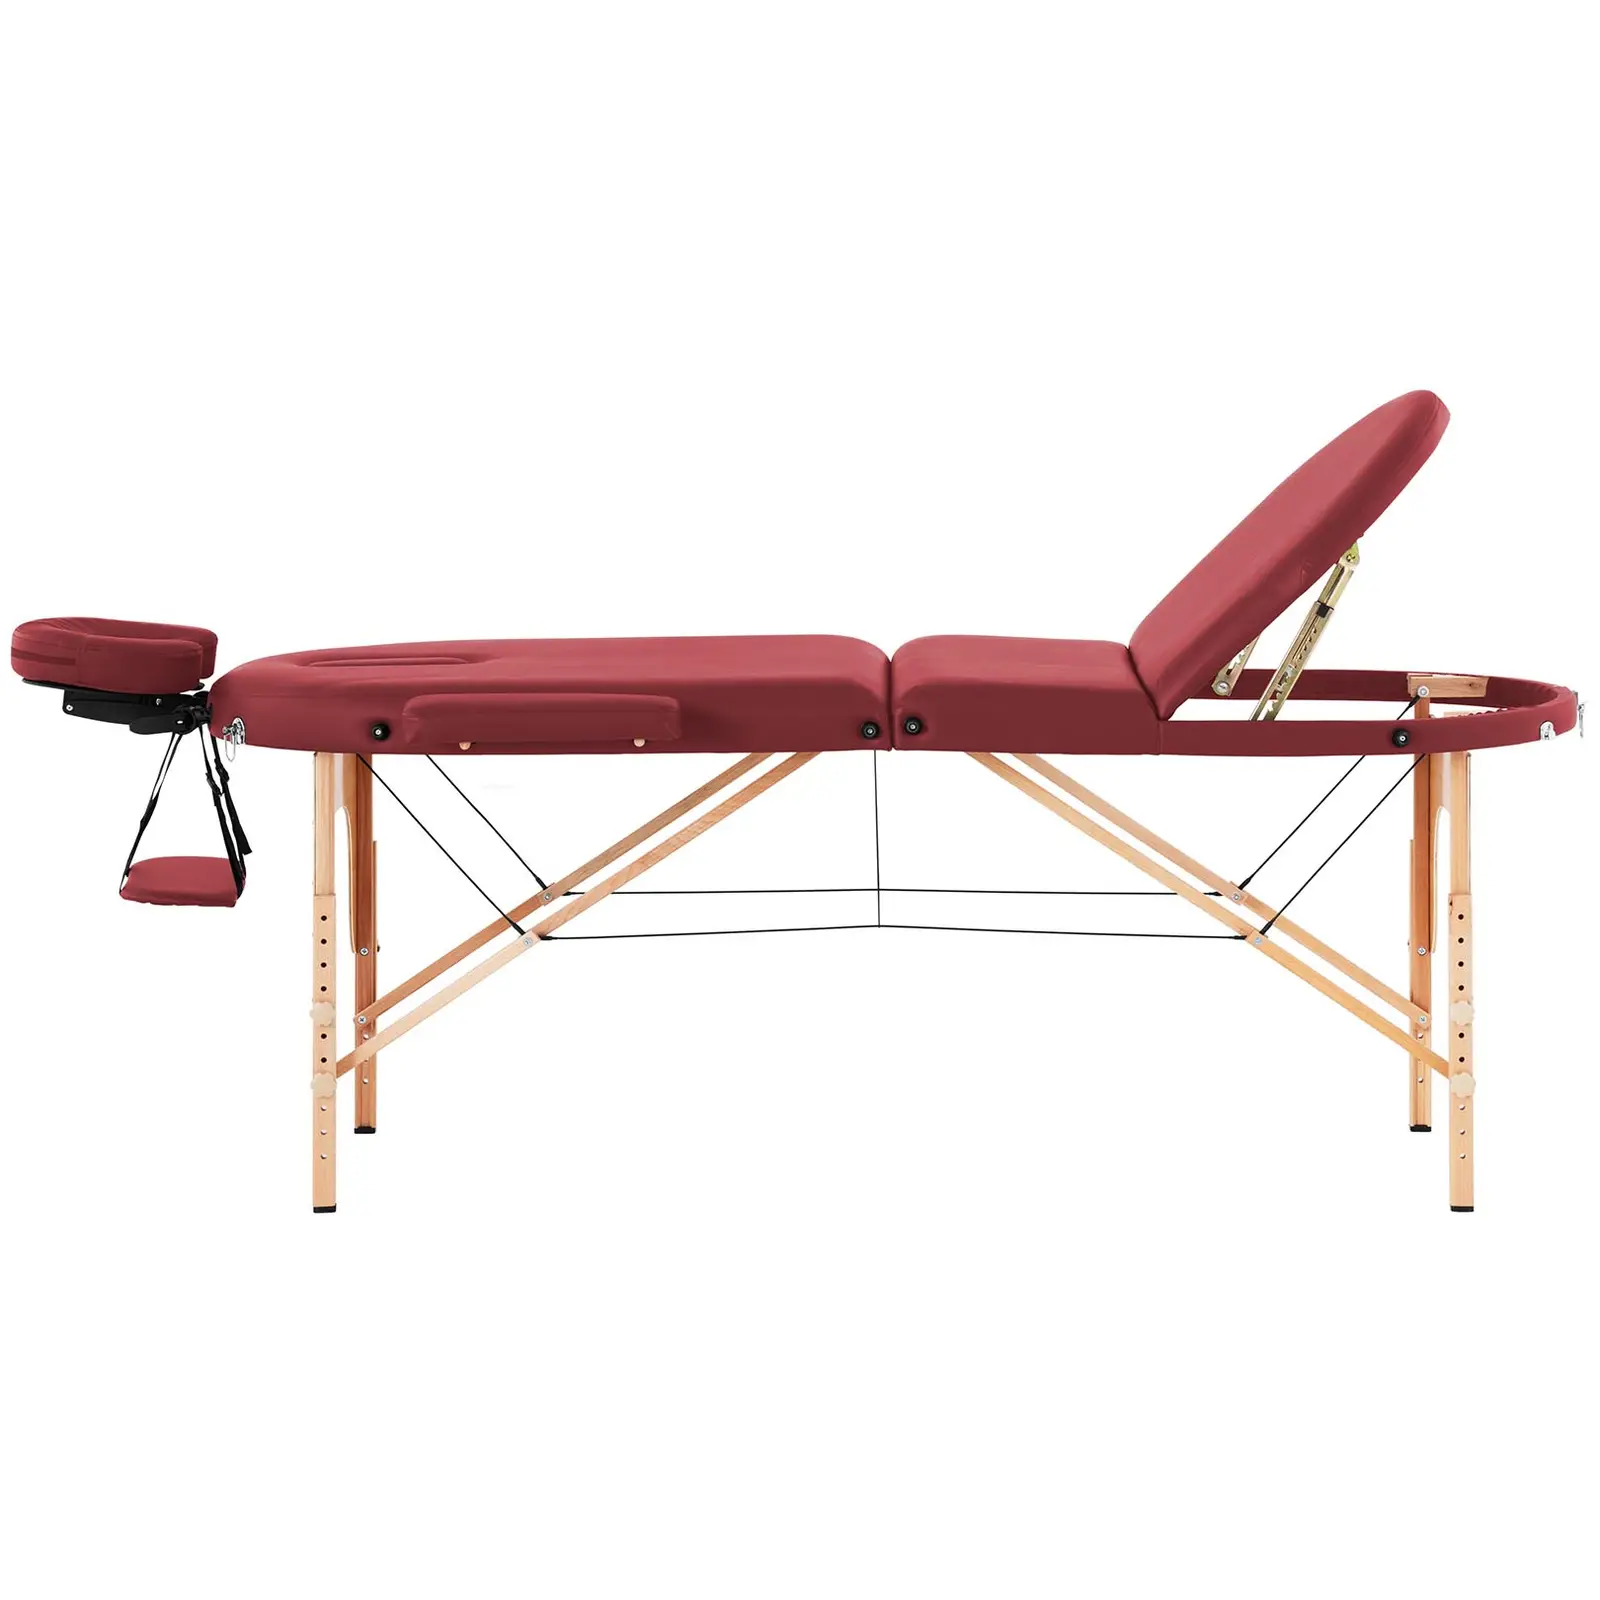 Lettino massaggio portatile - 185-211 x 70-88 x 63-85  cm - 227 kg - Rosso